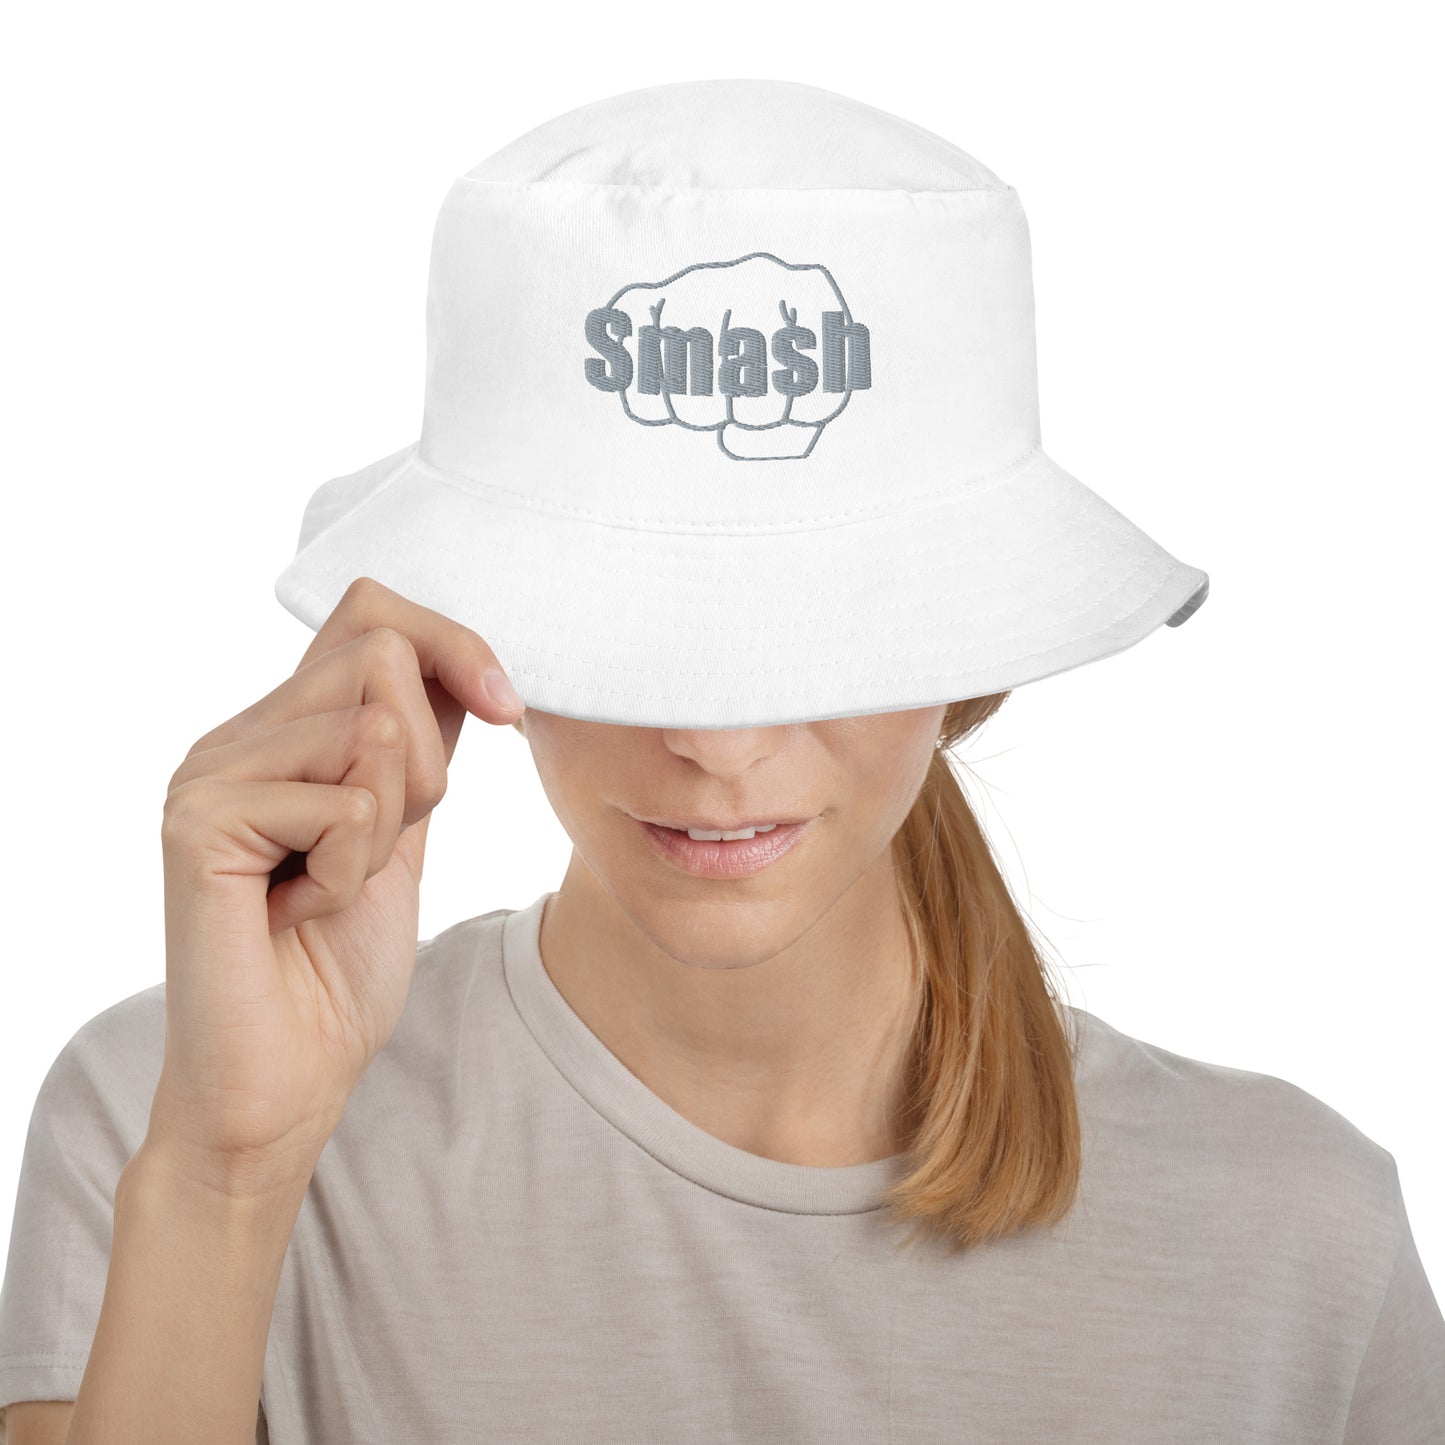 Smash Bucket Hat